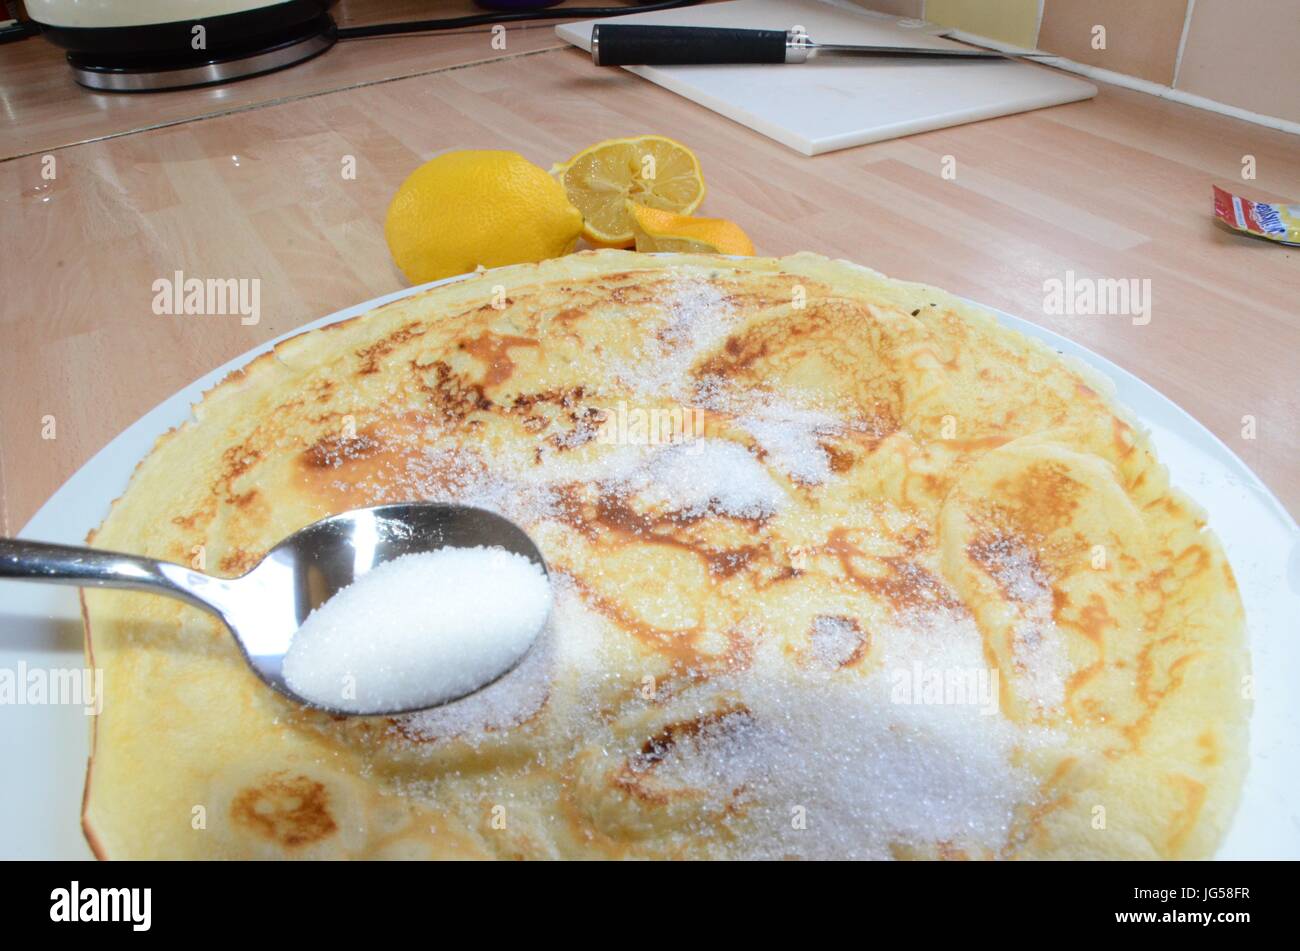 pancakes, shrove tuesday Stock Photo